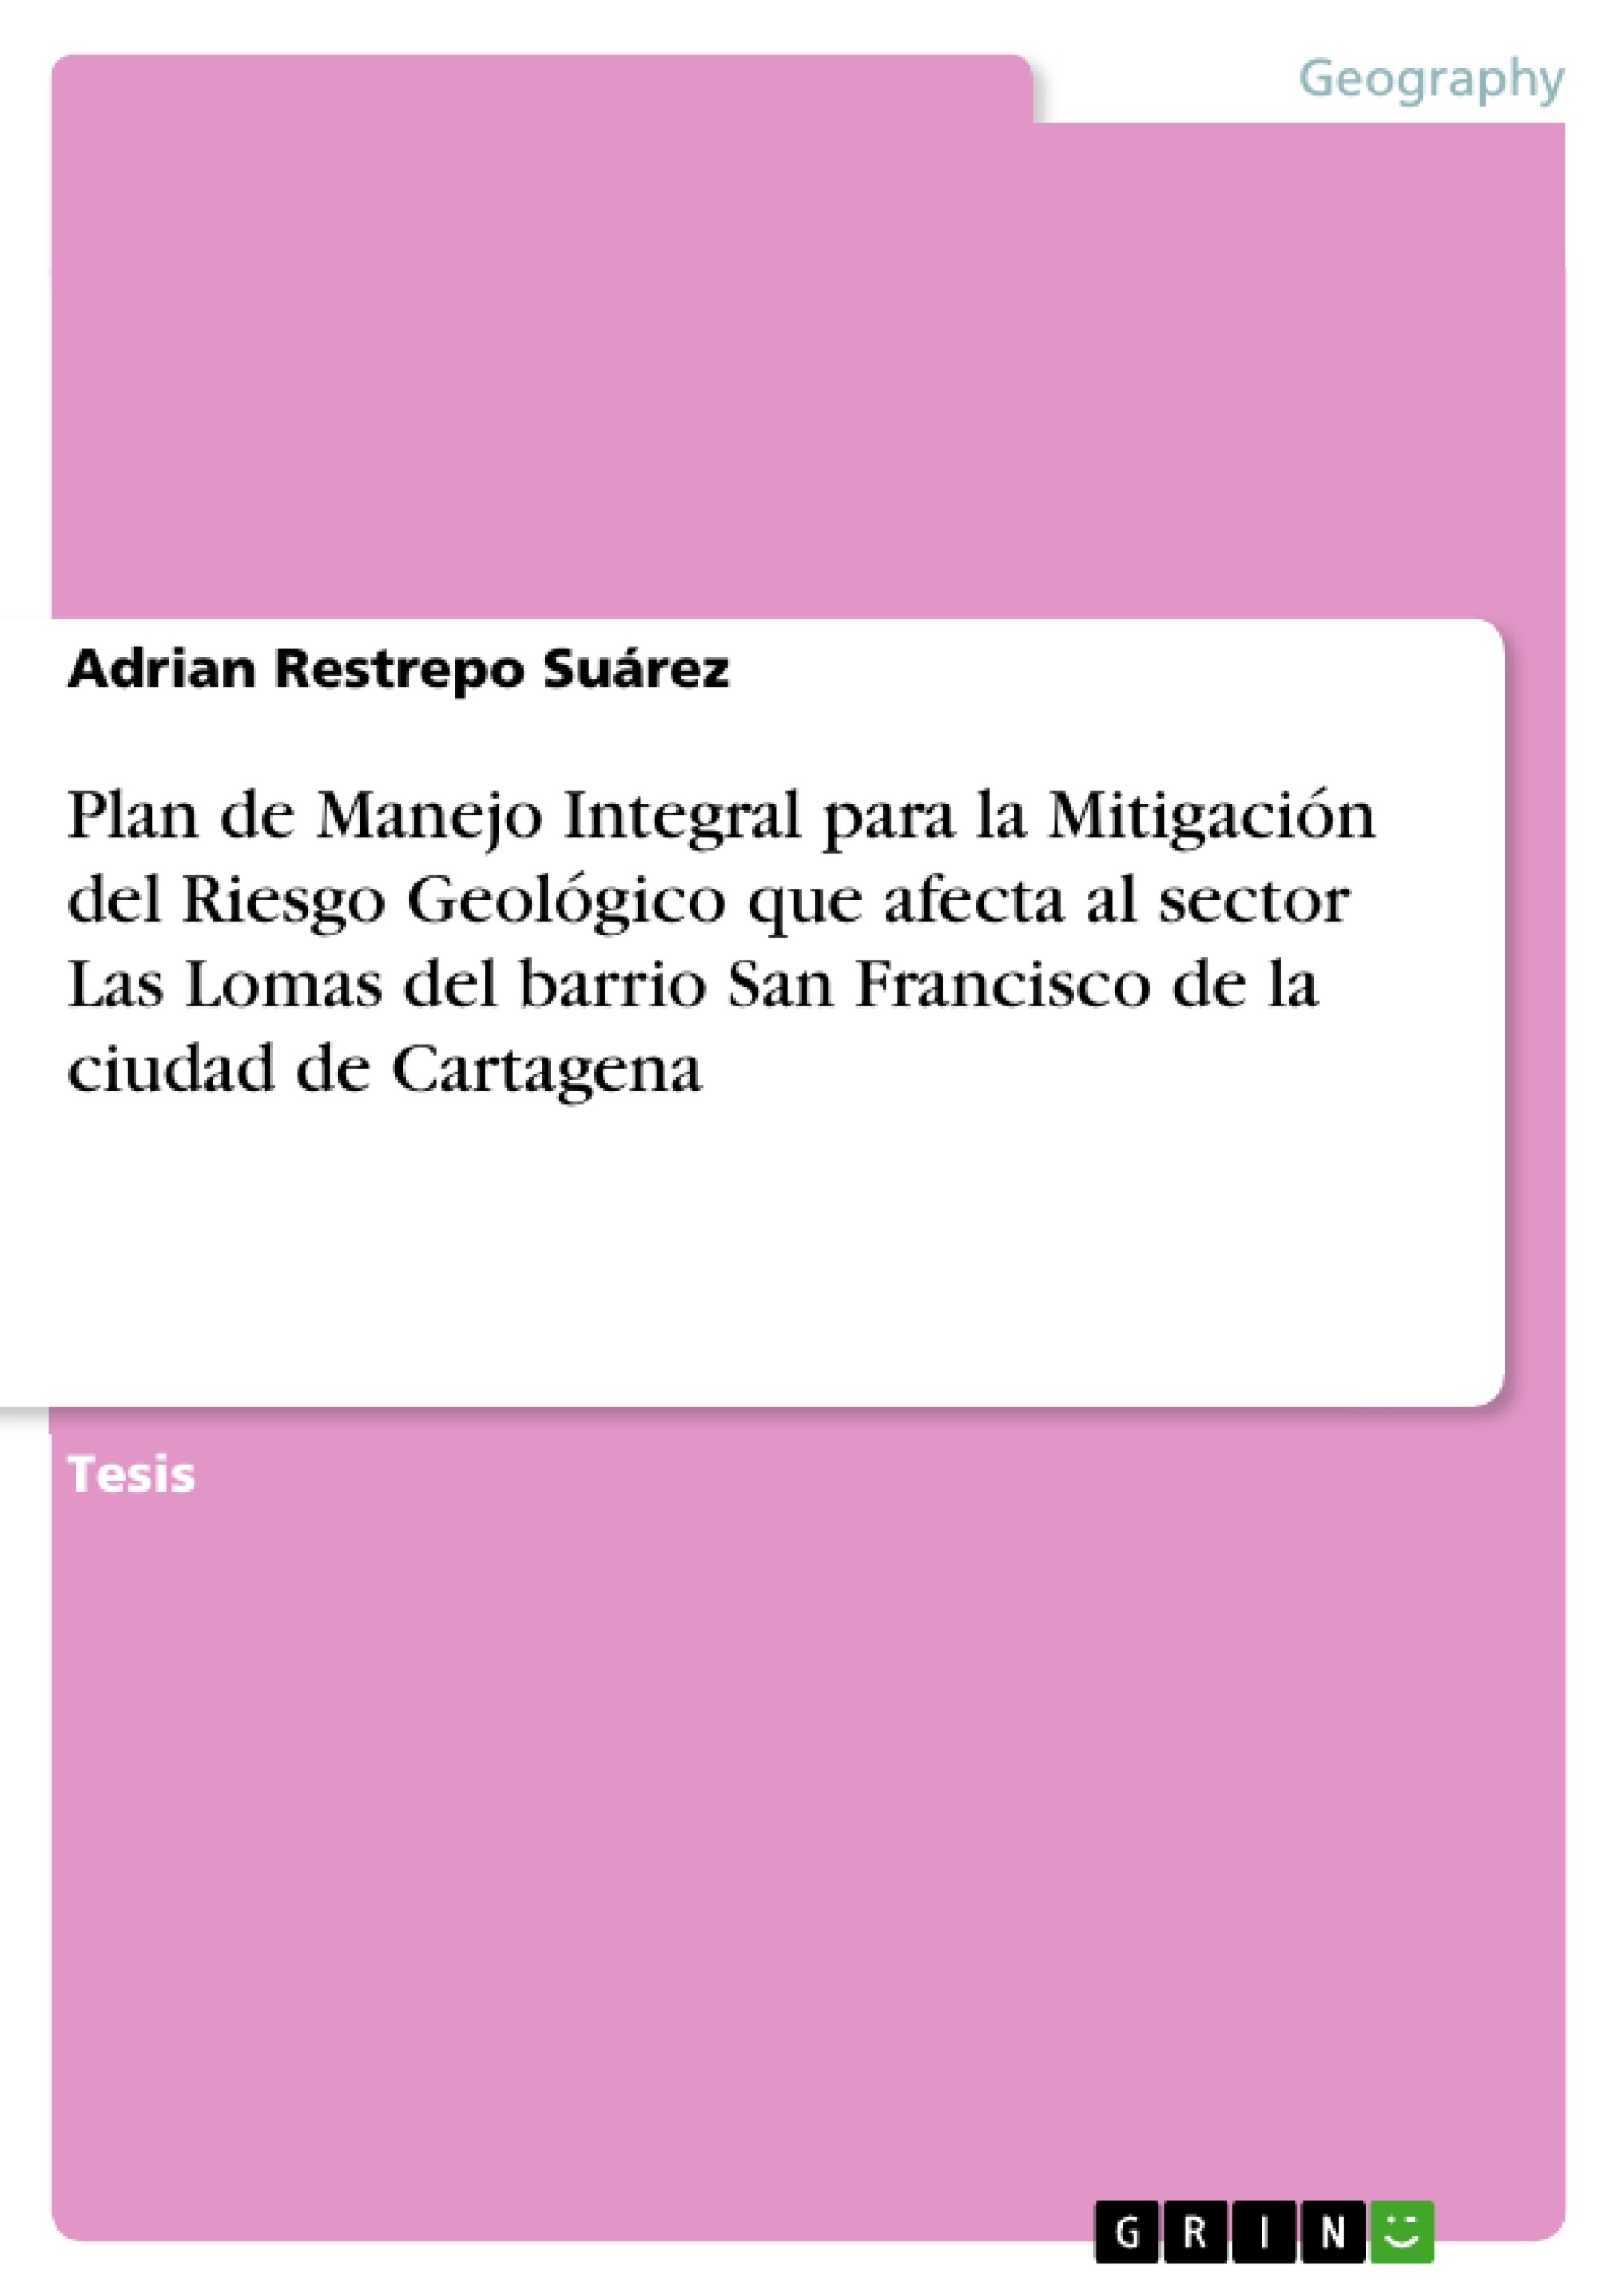 Título: Plan de Manejo Integral para la Mitigación del Riesgo Geológico que afecta al sector Las Lomas del barrio San Francisco de la ciudad de Cartagena